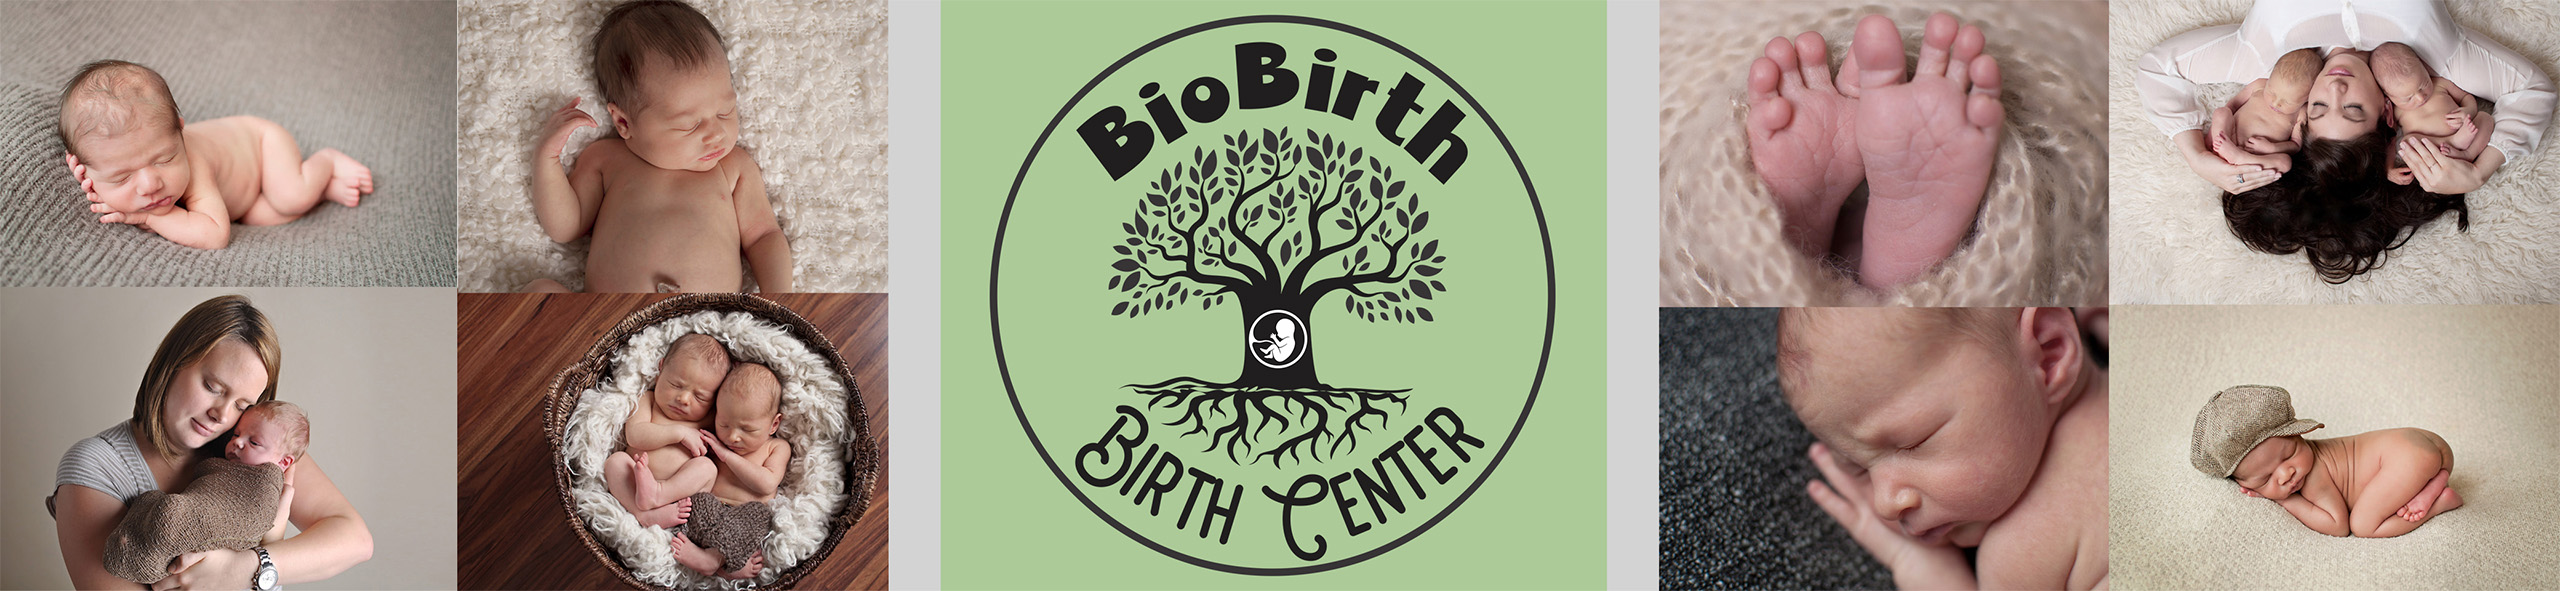 BioBirths, PLLC